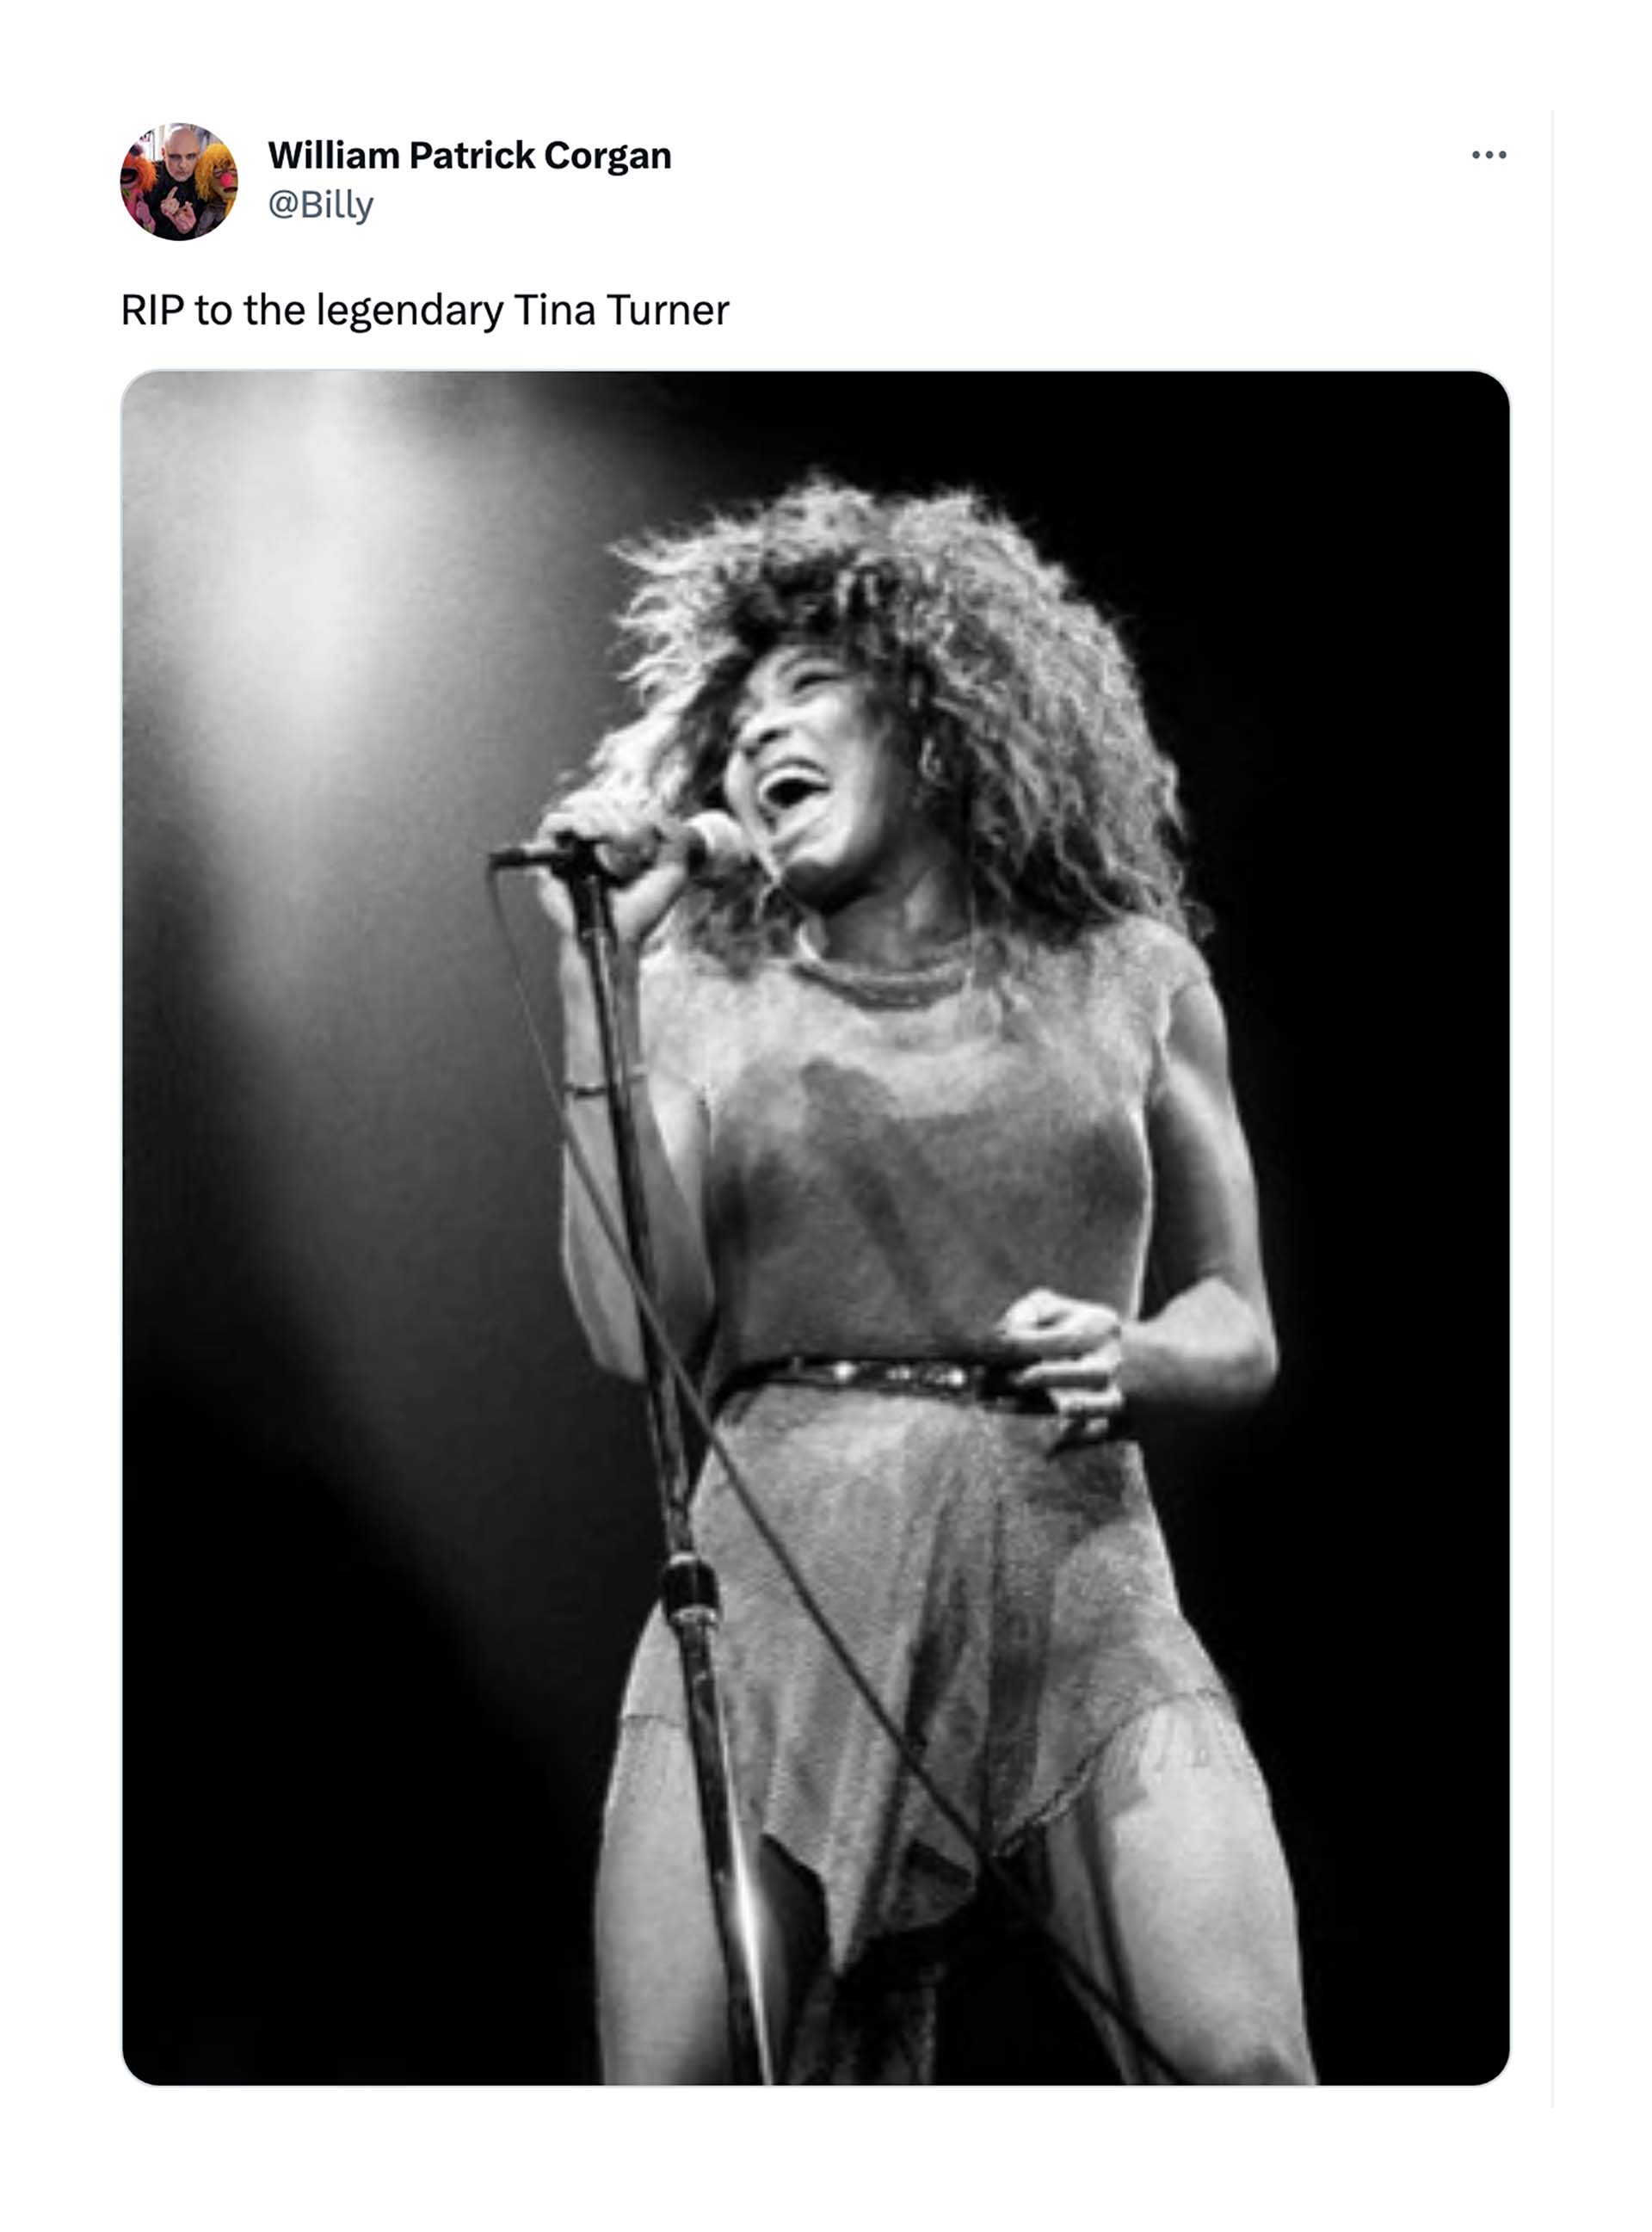 El líder de The Smashing Pumpkins compartió una foto icónica de Tina Turner